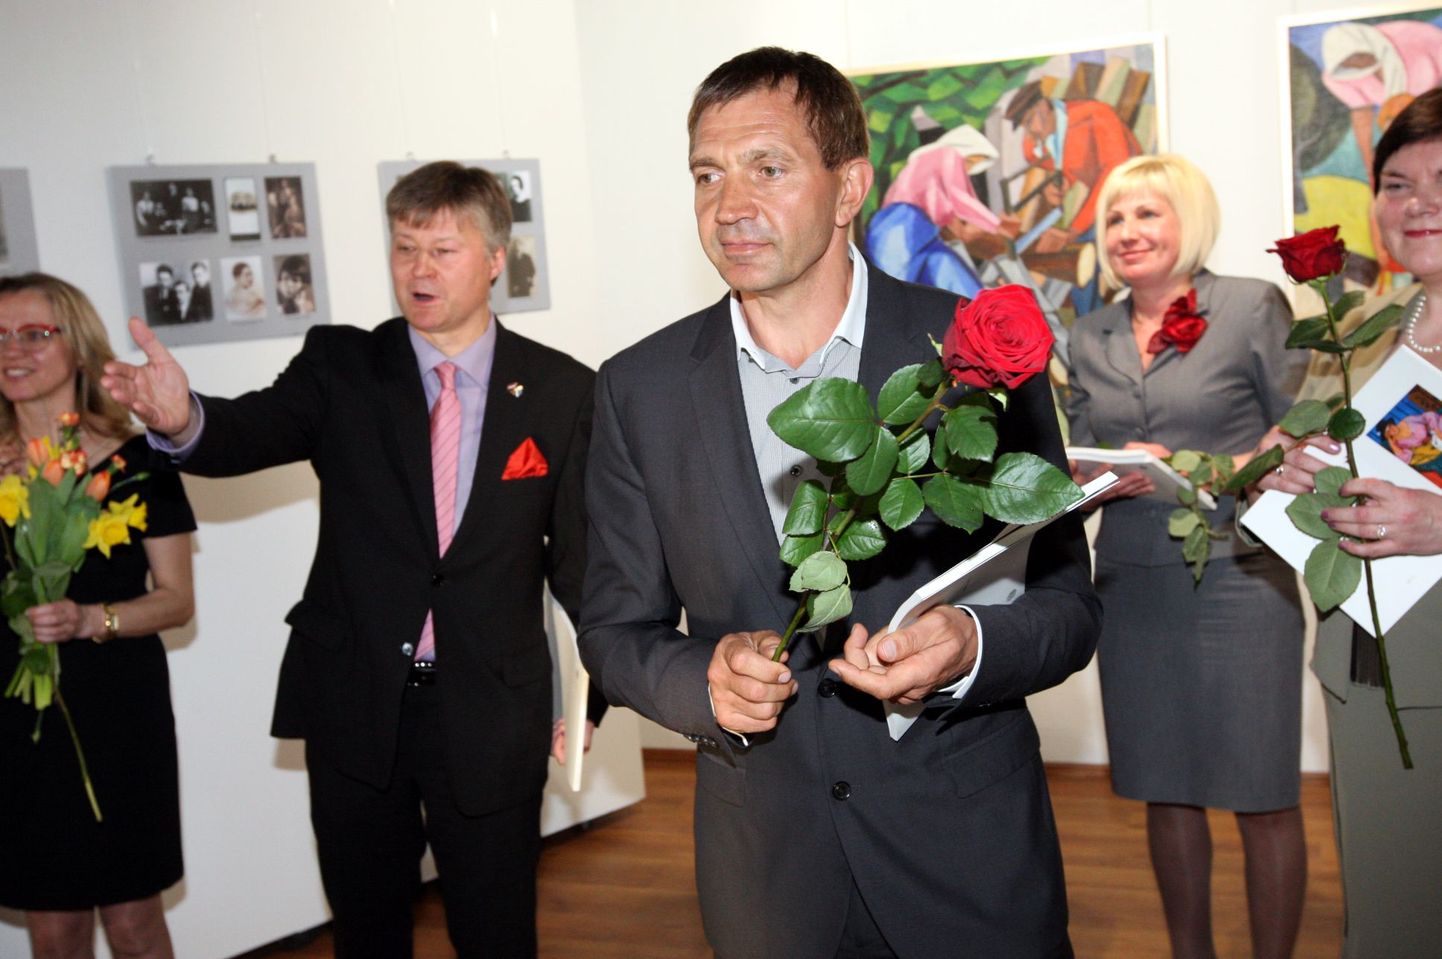 US Art Gallerys avati tuntud Läti kunstniku Gederts Eliassi näitus "Värvi maagia".
Näituse avas galerii omanik Urmas Sõõrumaa